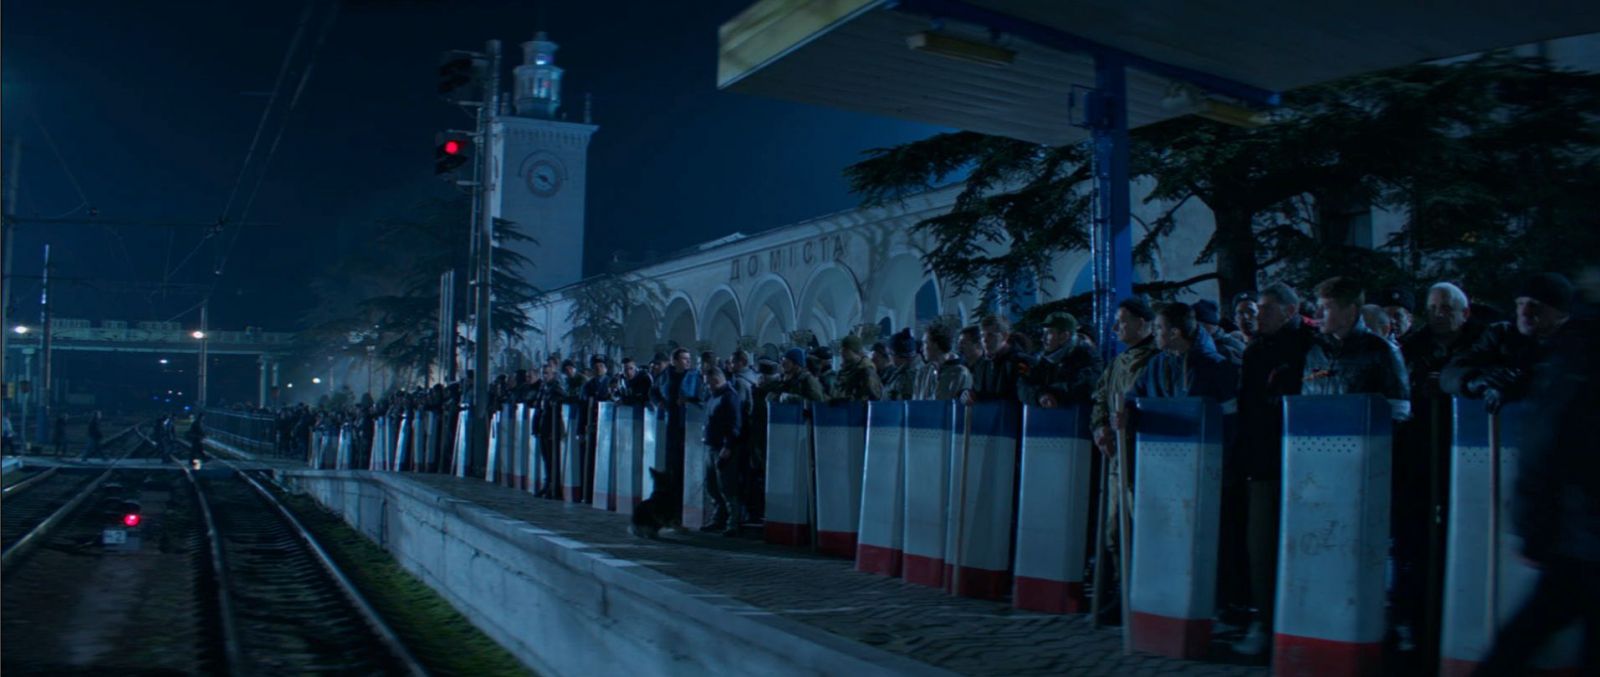 Кадр из фильма "Крым"